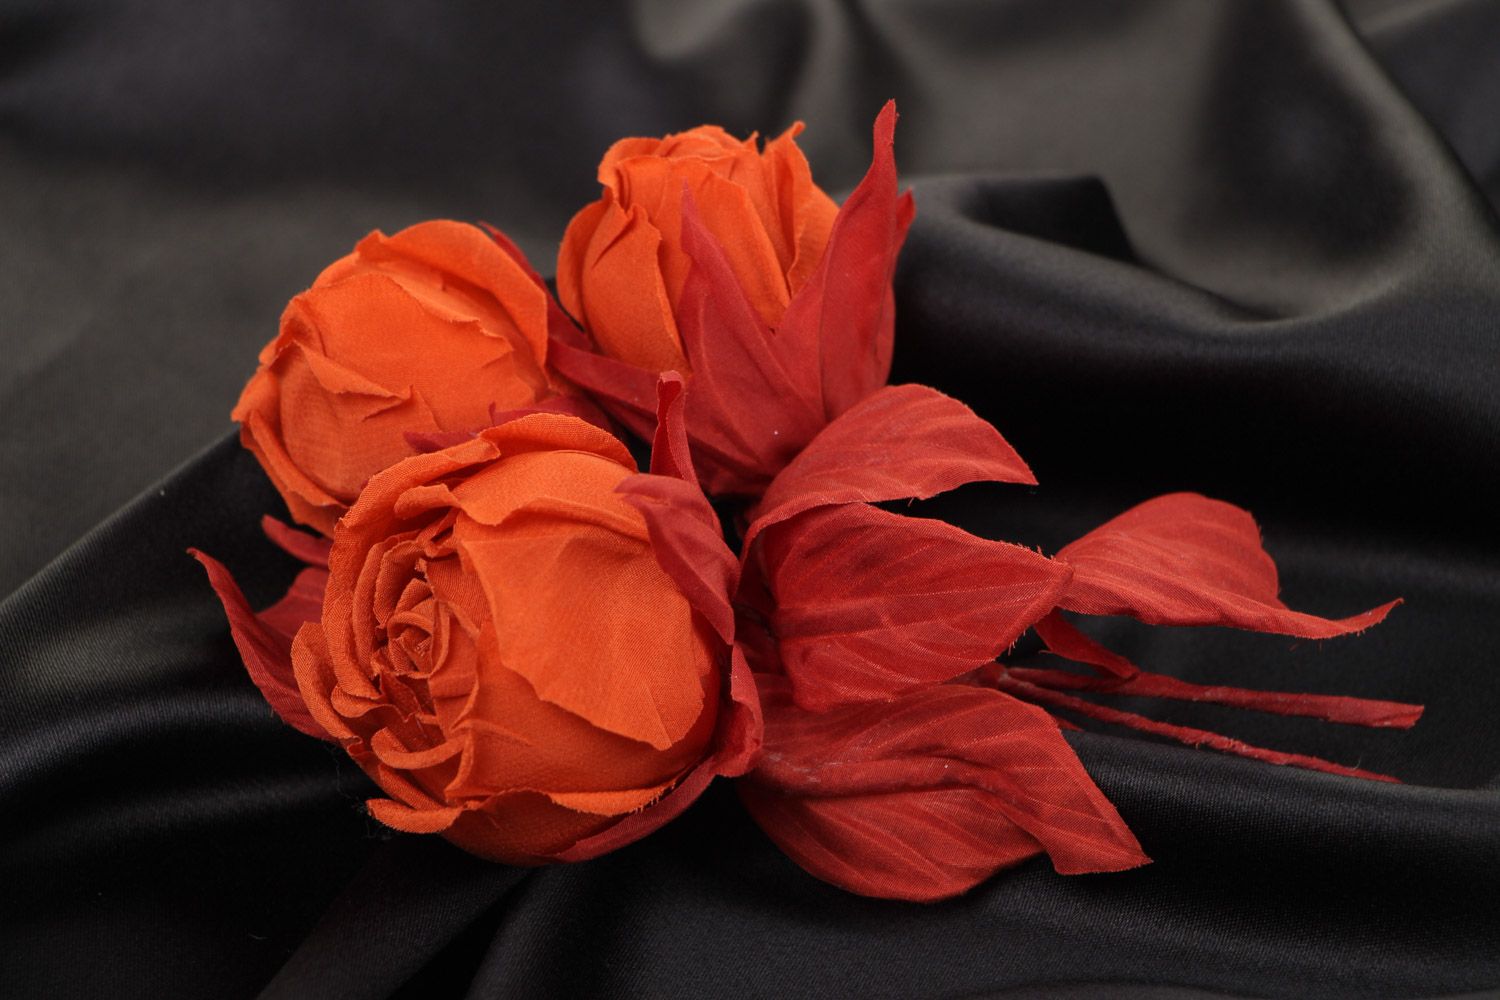 Брошь цветы из ткани красные розы яркая крупная необычная красивая ручной работы фото 1